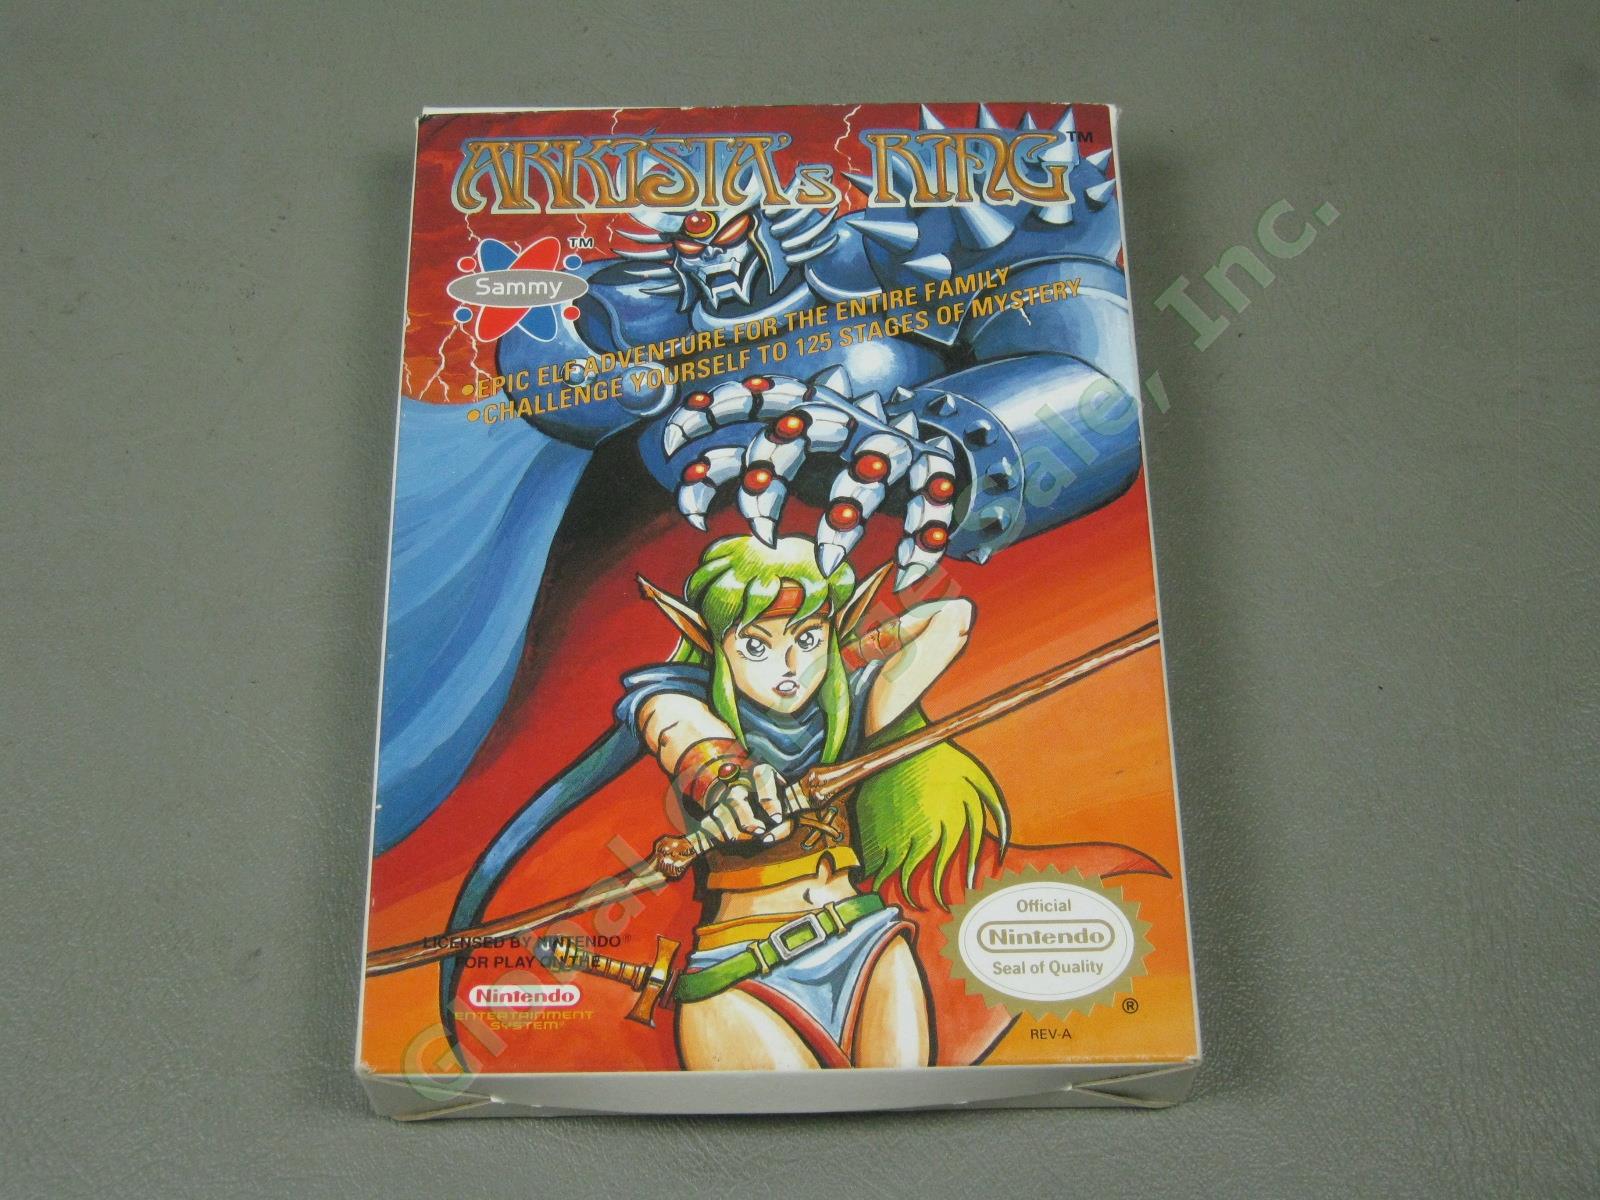 RARE Boxed Vtg 1989 Nintendo NES RPG Game Arkista